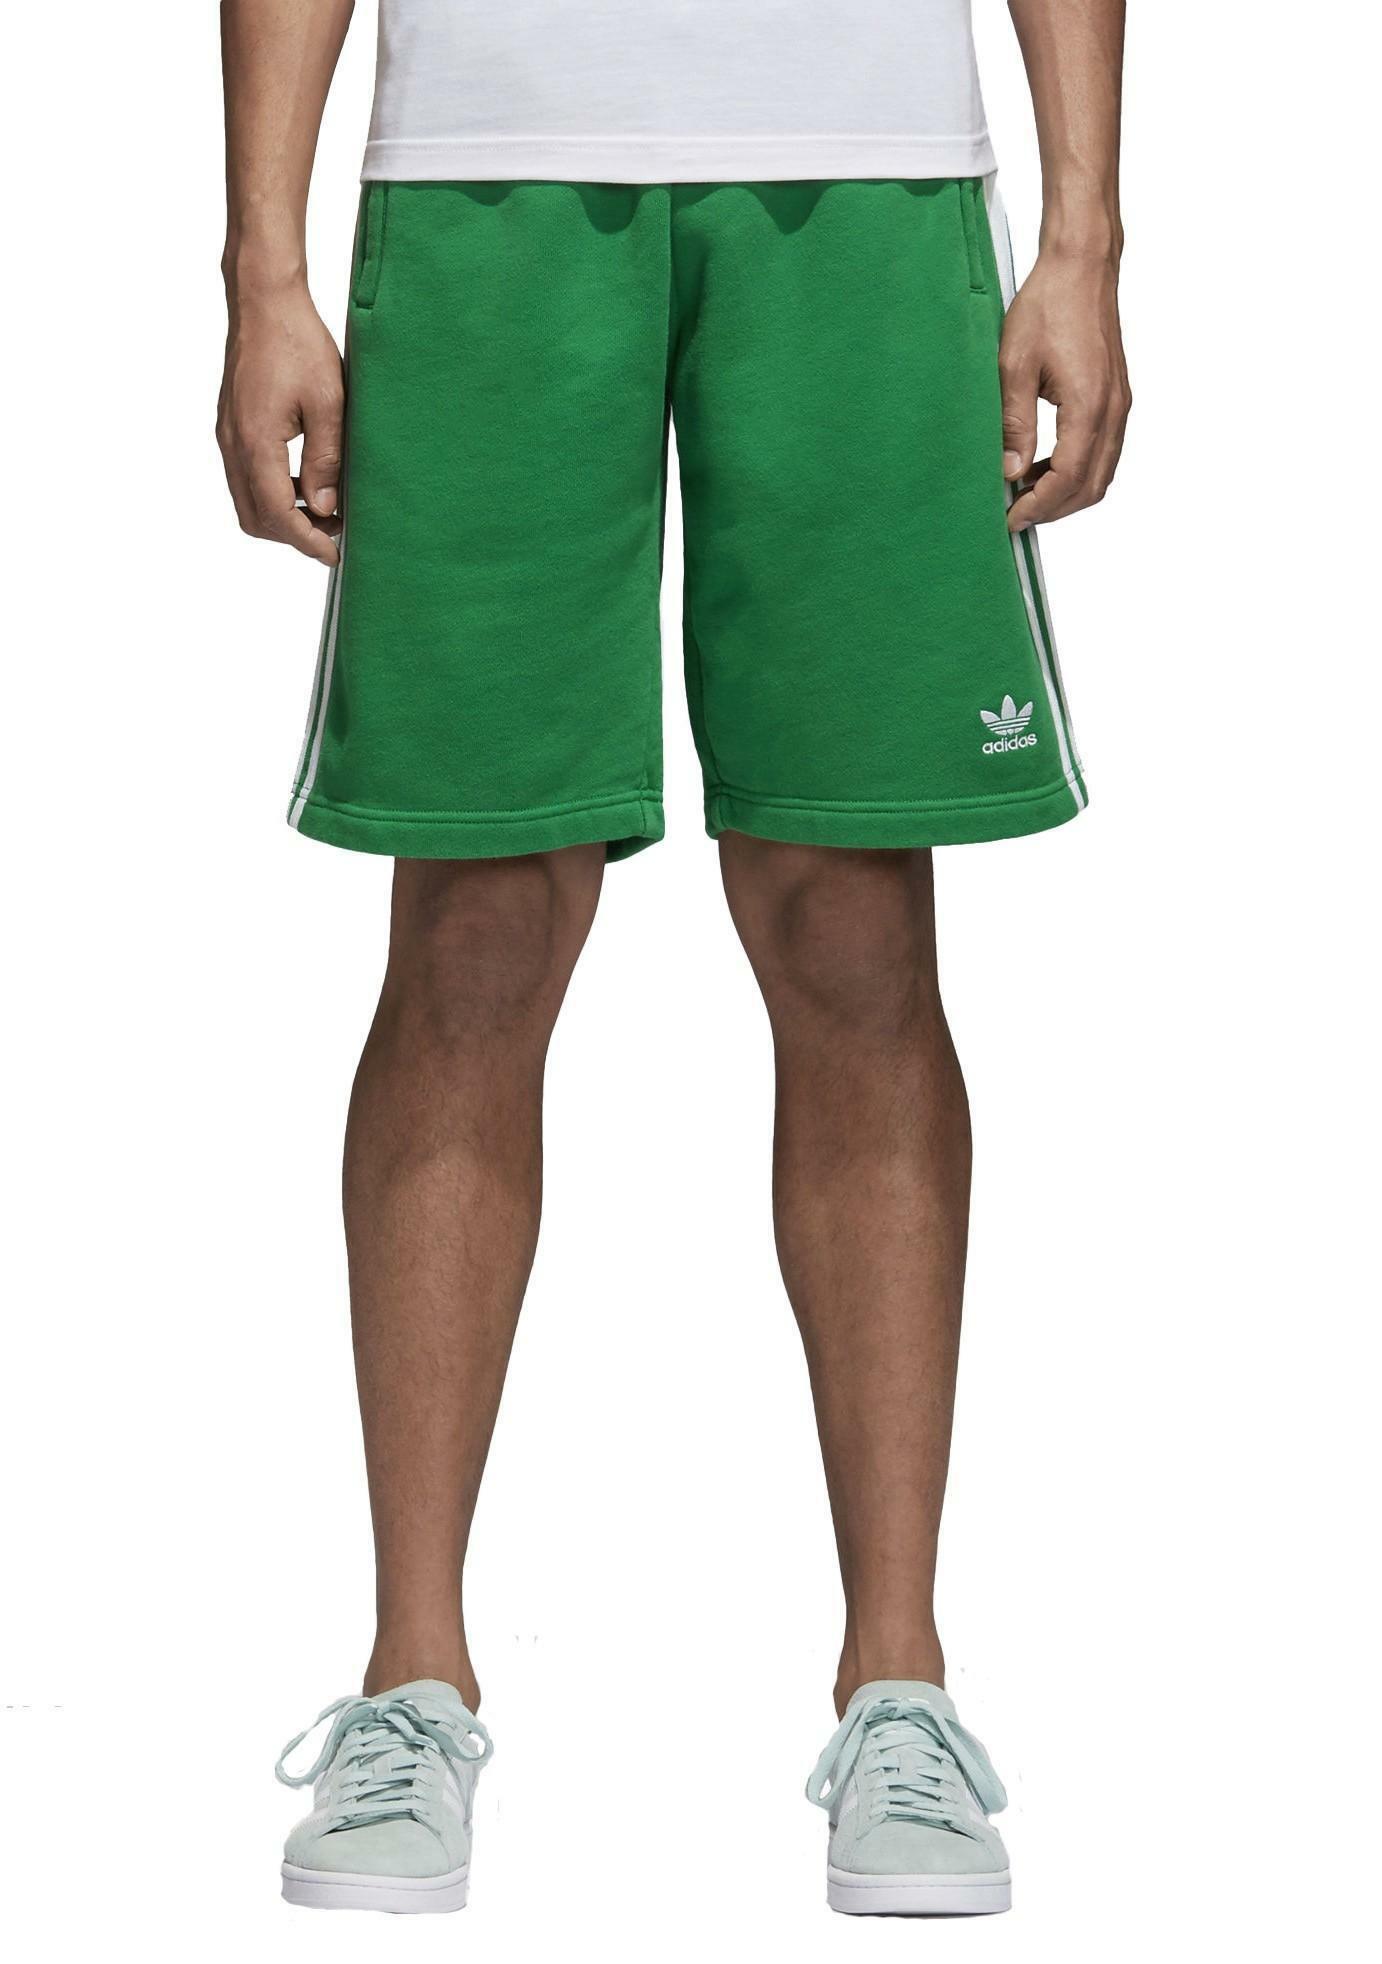 Adidas pantaloncini sportivi uomo verdi